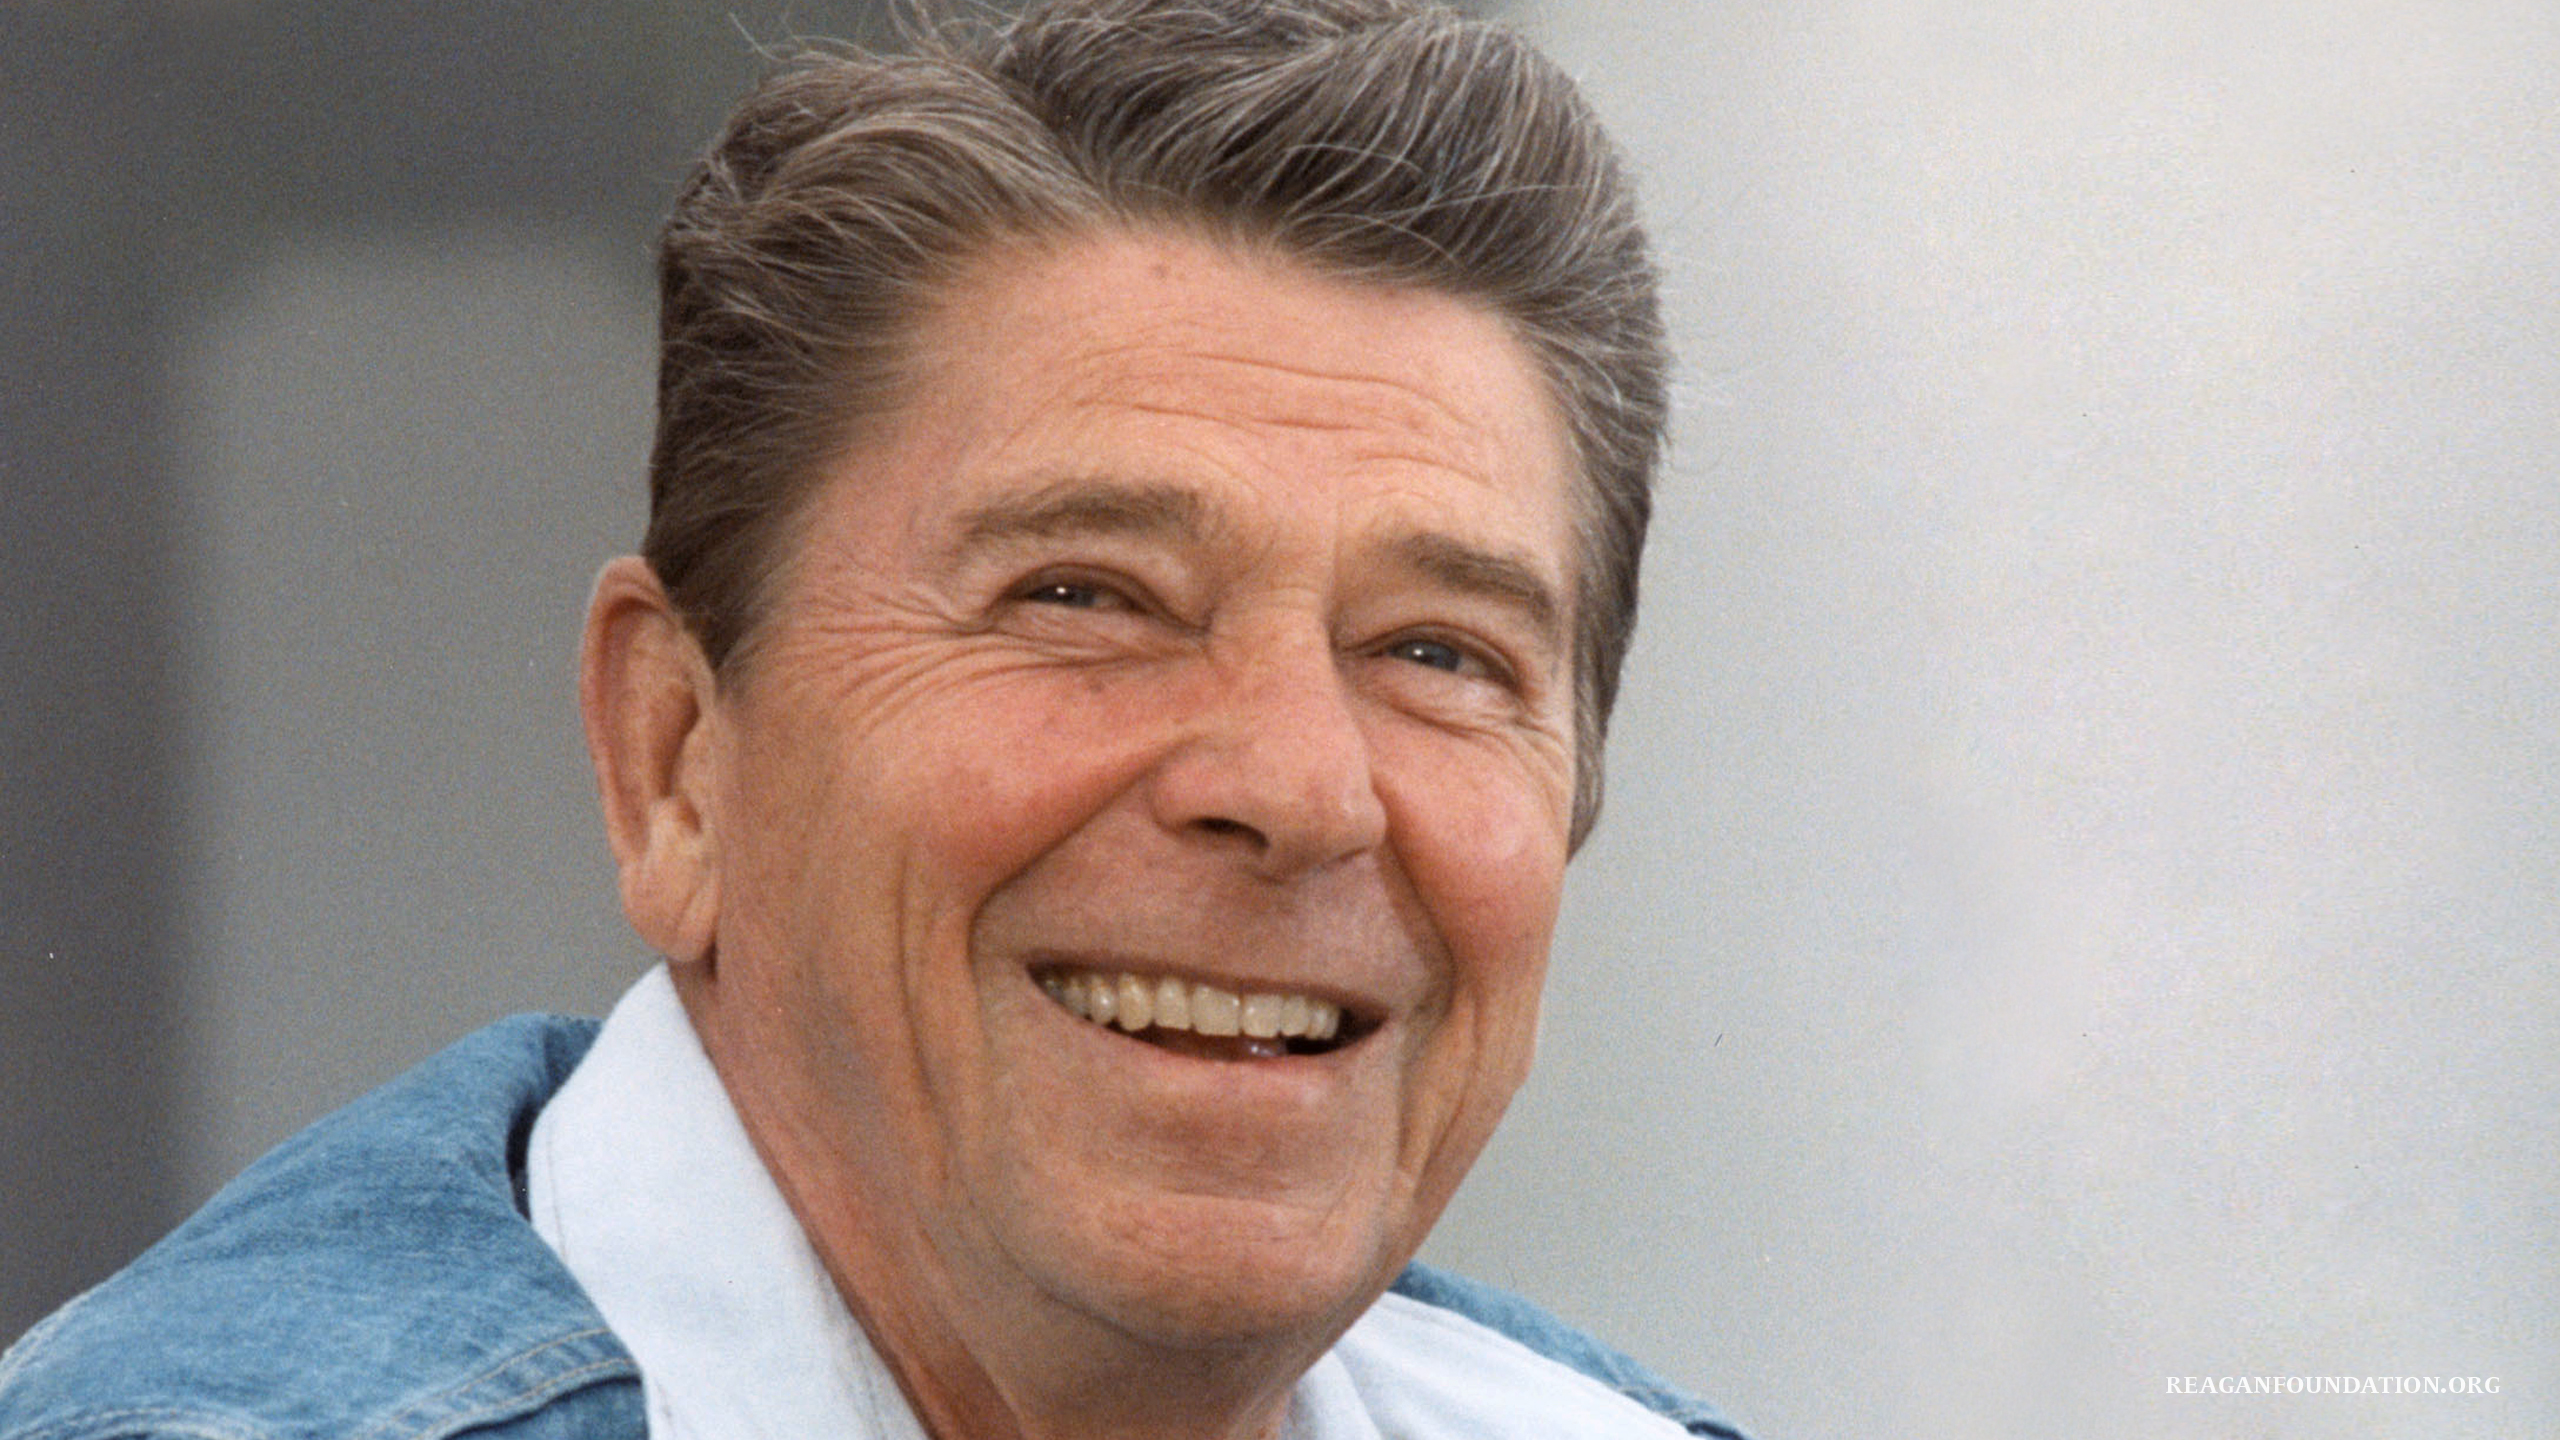 Ronald Reagan Presidential - Paul Ryan Ronald Reagan , HD Wallpaper & Backgrounds